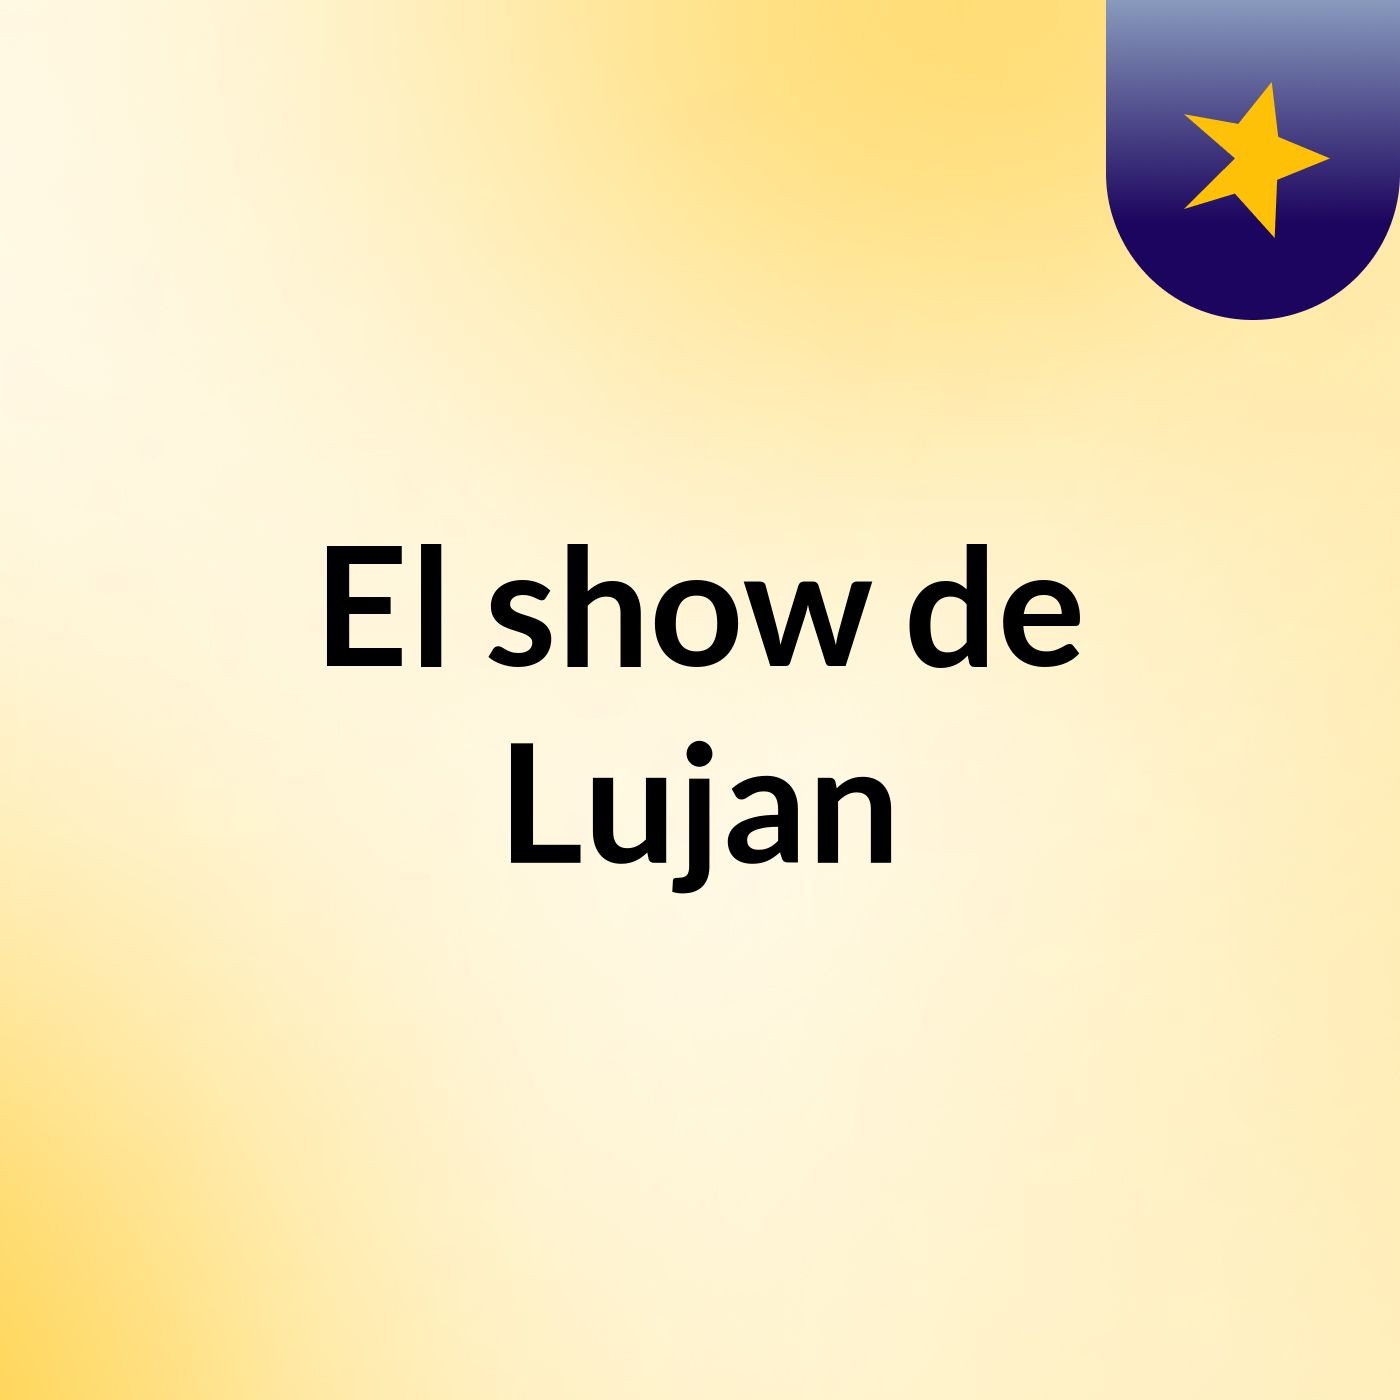 El show de Lujan